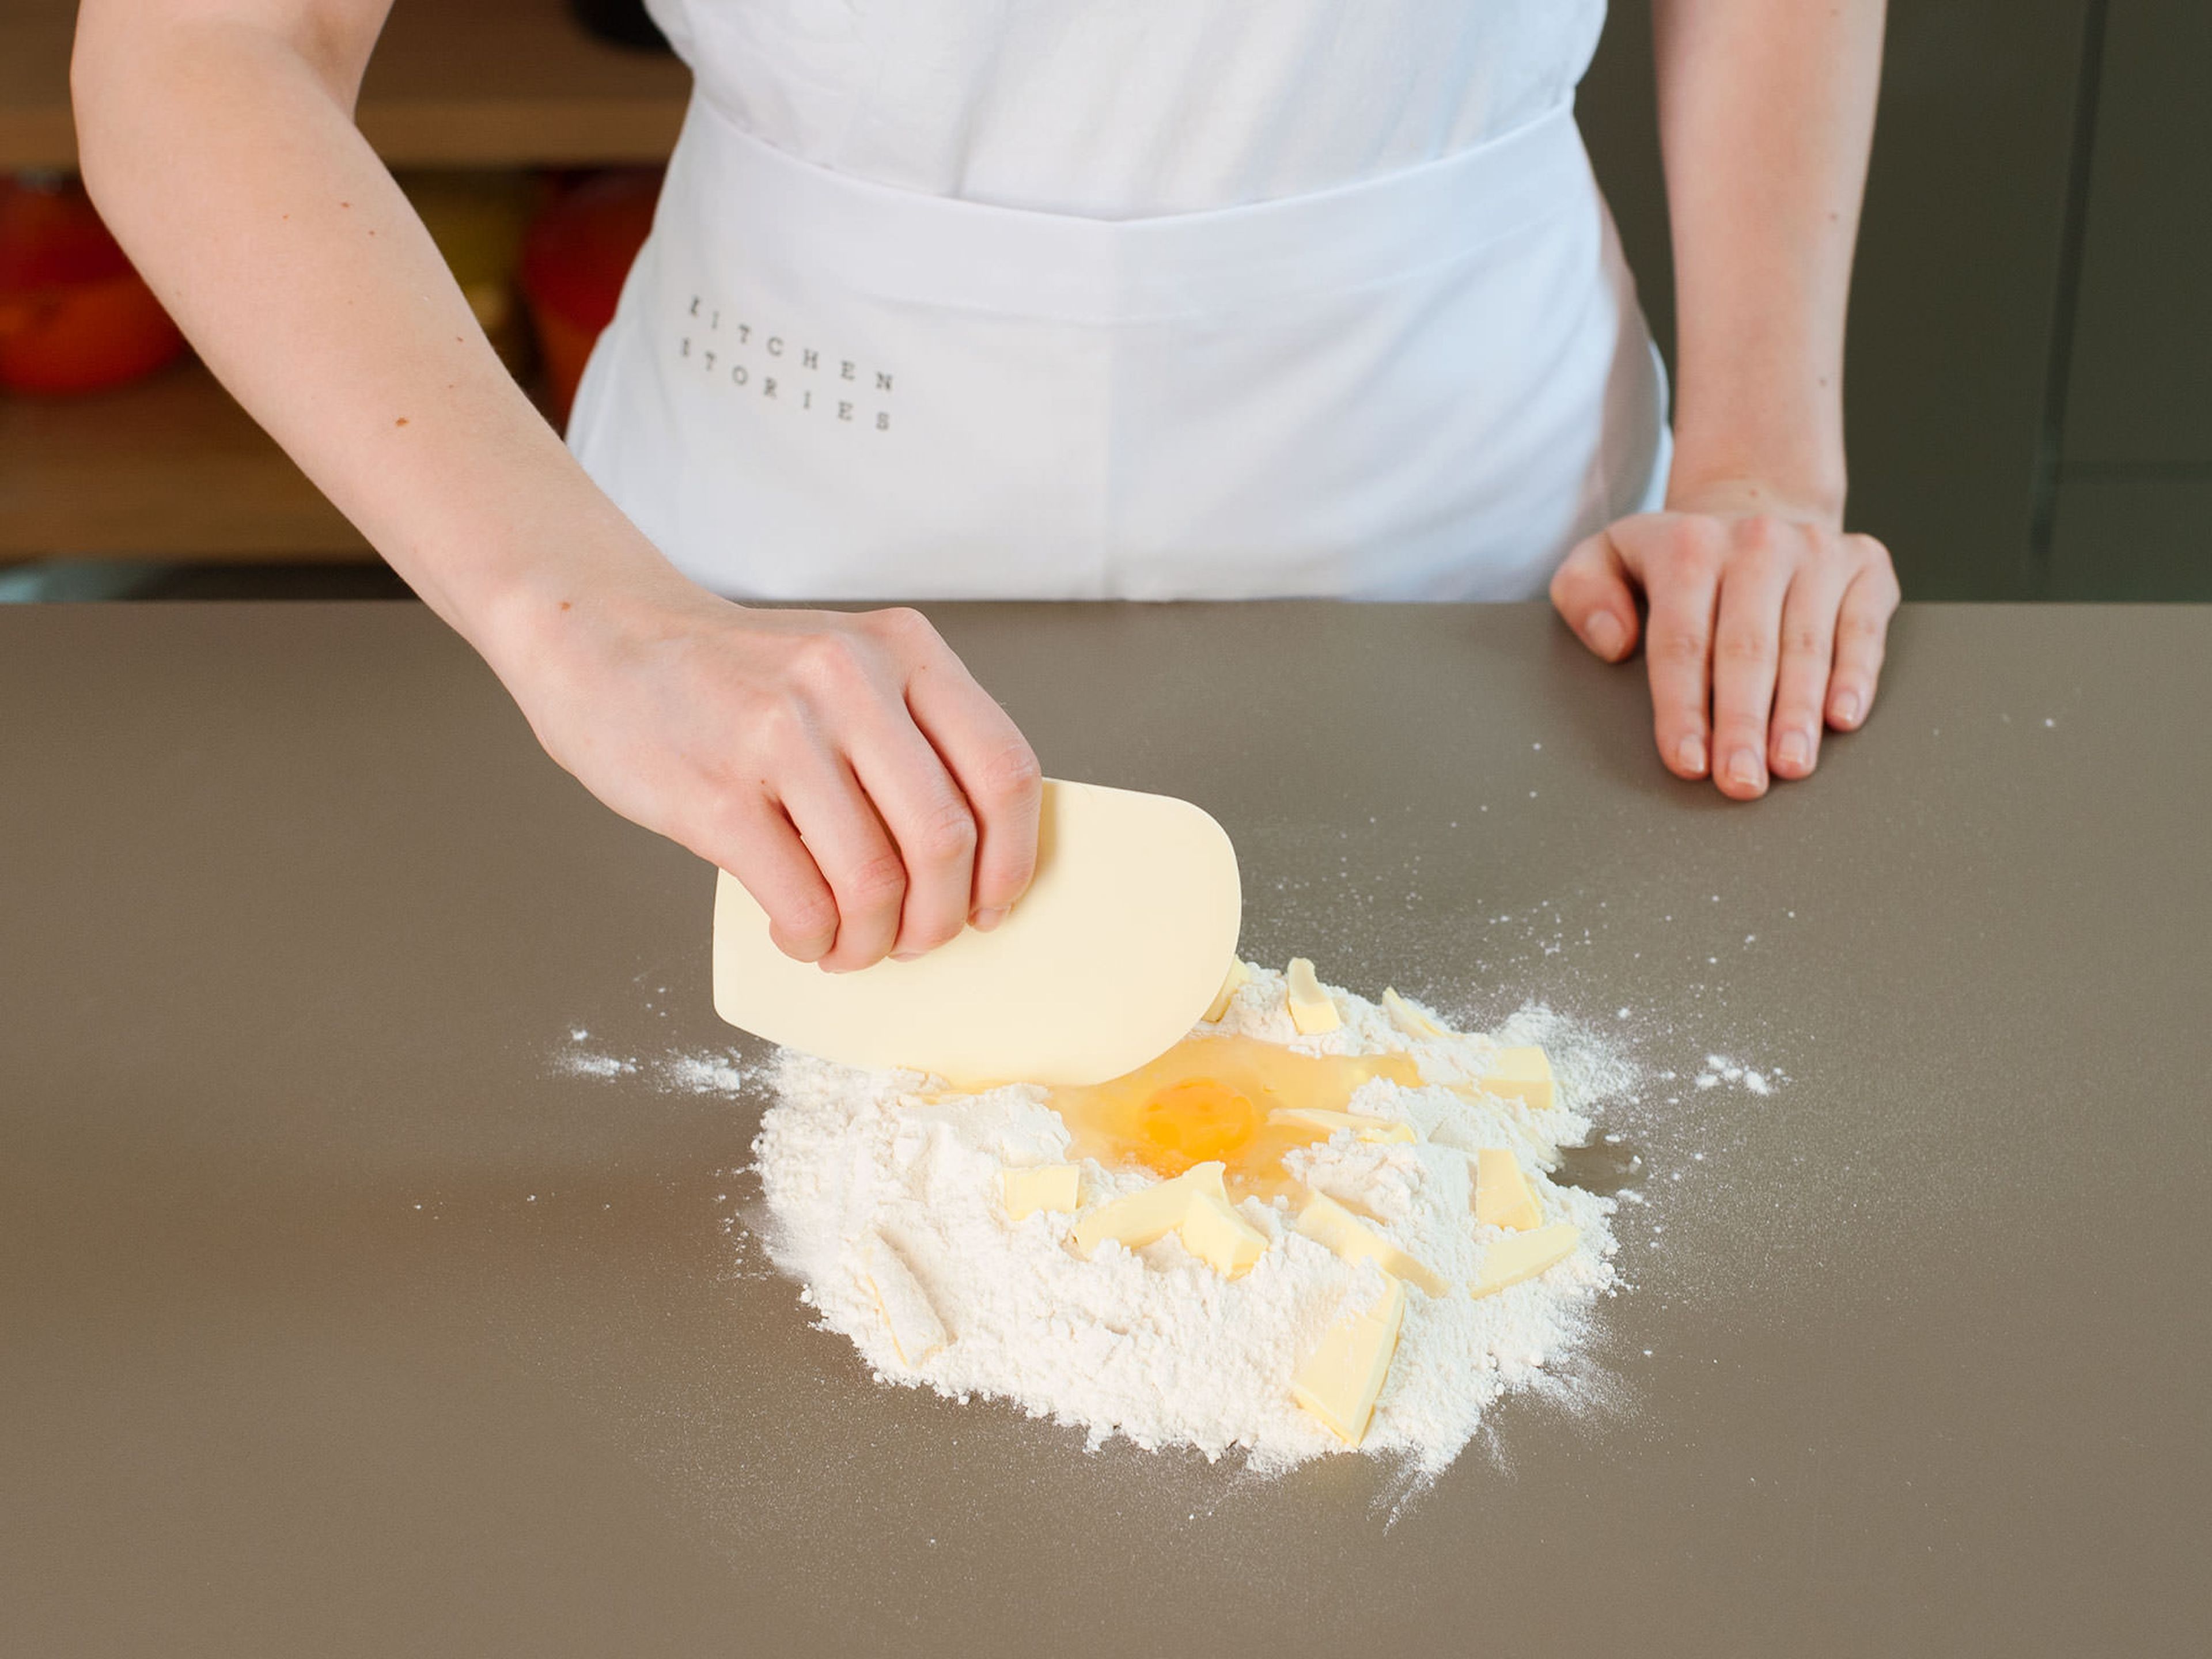 Mehl und Salz vermengen, auf eine Arbeitsfläche geben und zu einem Hügel mit einer Einbuchtung in der Mitte formen. Ein Ei in die Einbuchtung geben. Butter in grobe Stücke schneiden, auf dem Mehl verteilen und anschließend mit dem Teigschaber einarbeiten. Mit den Händen alle Zutaten gut miteinander vermengen, bis sich ein gleichmäßiger Teig bildet. In eine flache Scheibe pressen, ein Frischhaltefolie einschlagen und für ca. 30 Min. in den Kühlschrank geben.